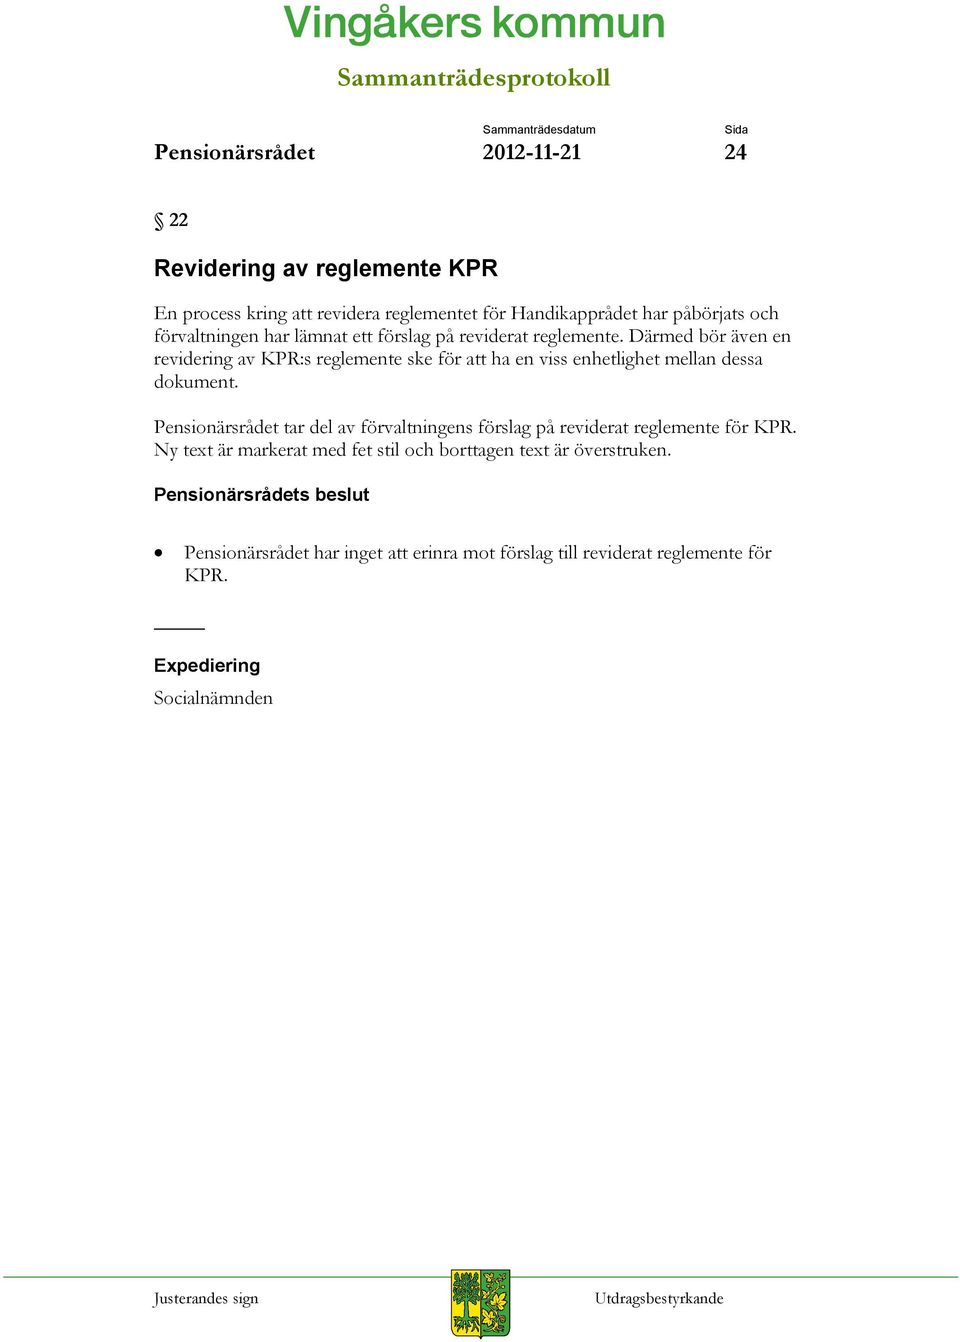 Därmed bör även en revidering av KPR:s reglemente ske för att ha en viss enhetlighet mellan dessa dokument.